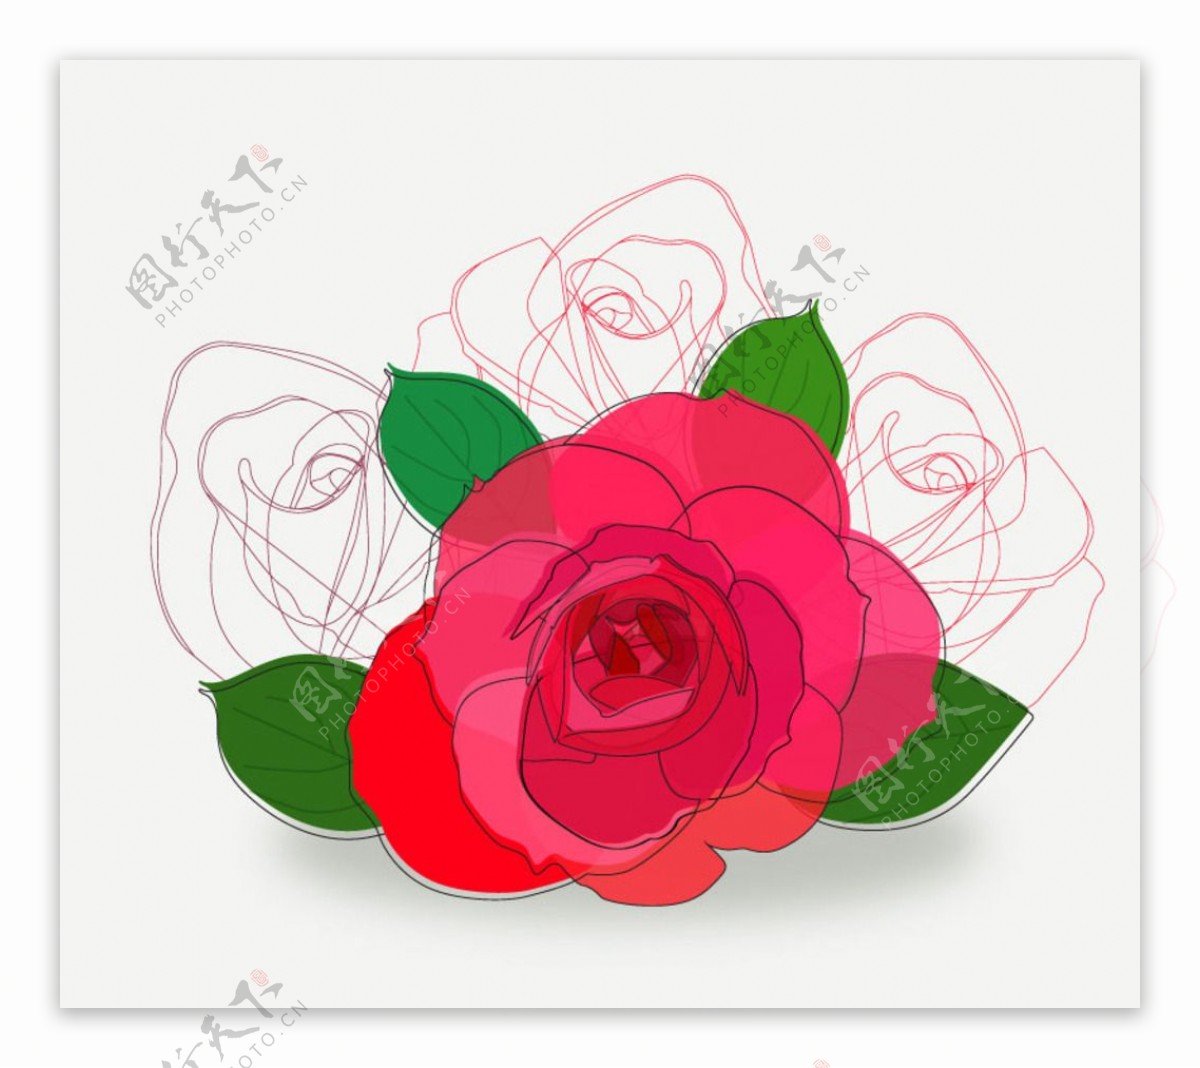 彩绘红色玫瑰花